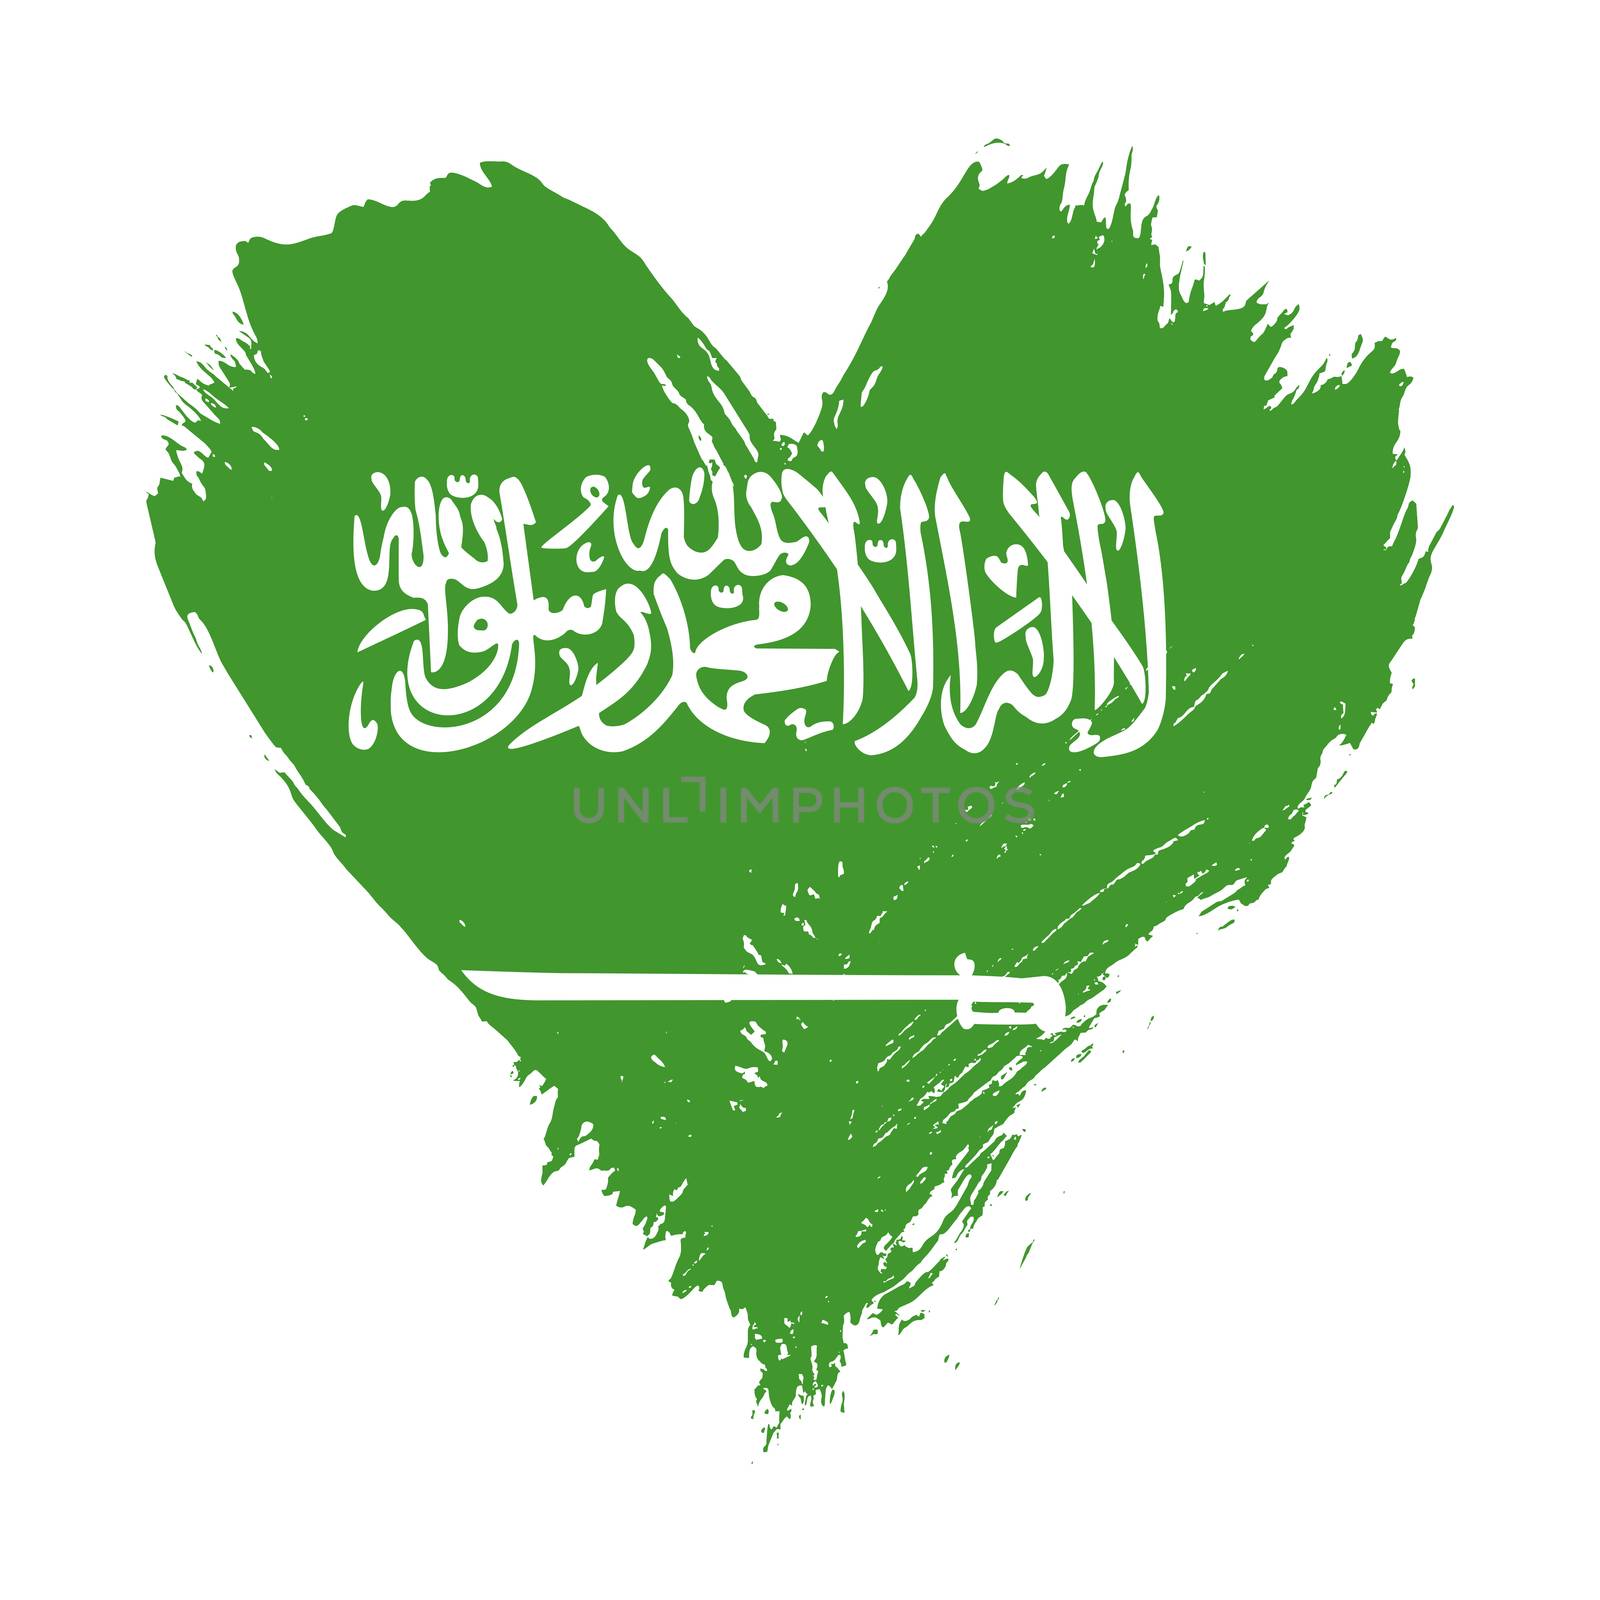 Grunge brushstroke painted illustration of heart shaped distressed Saudi Arabia KSA flag isolated on white background